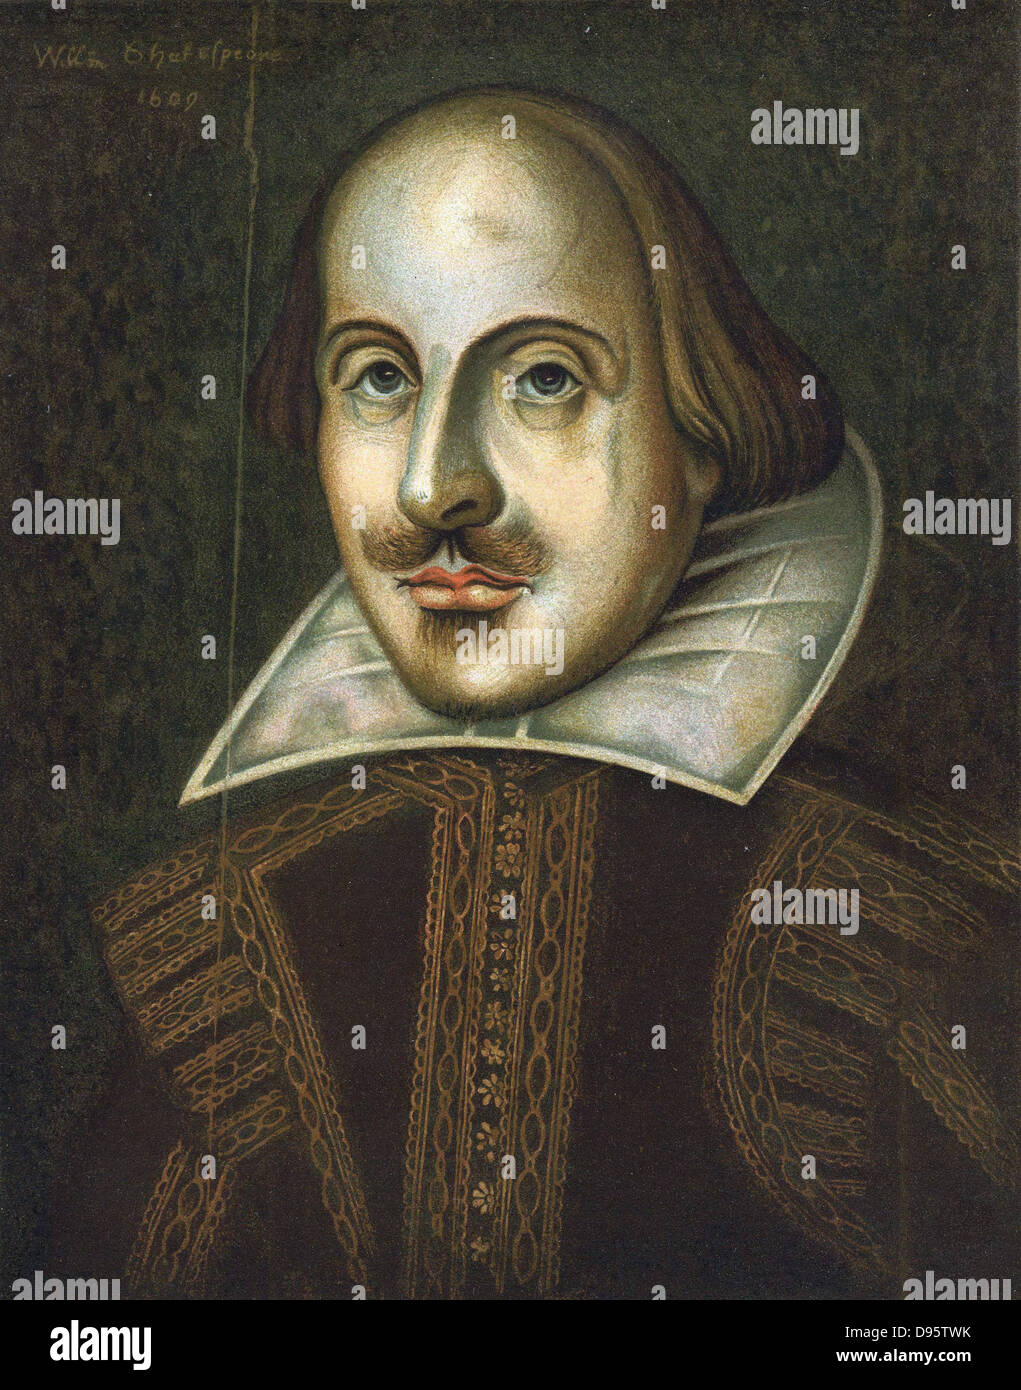 William Shakespeare (1564-1616), englischer Dramatiker. Anonym Porträt in Öl vom 1609. Dies ist das Portrait gestochen von Droeshout zum ersten Folio von 1623 Stockfoto